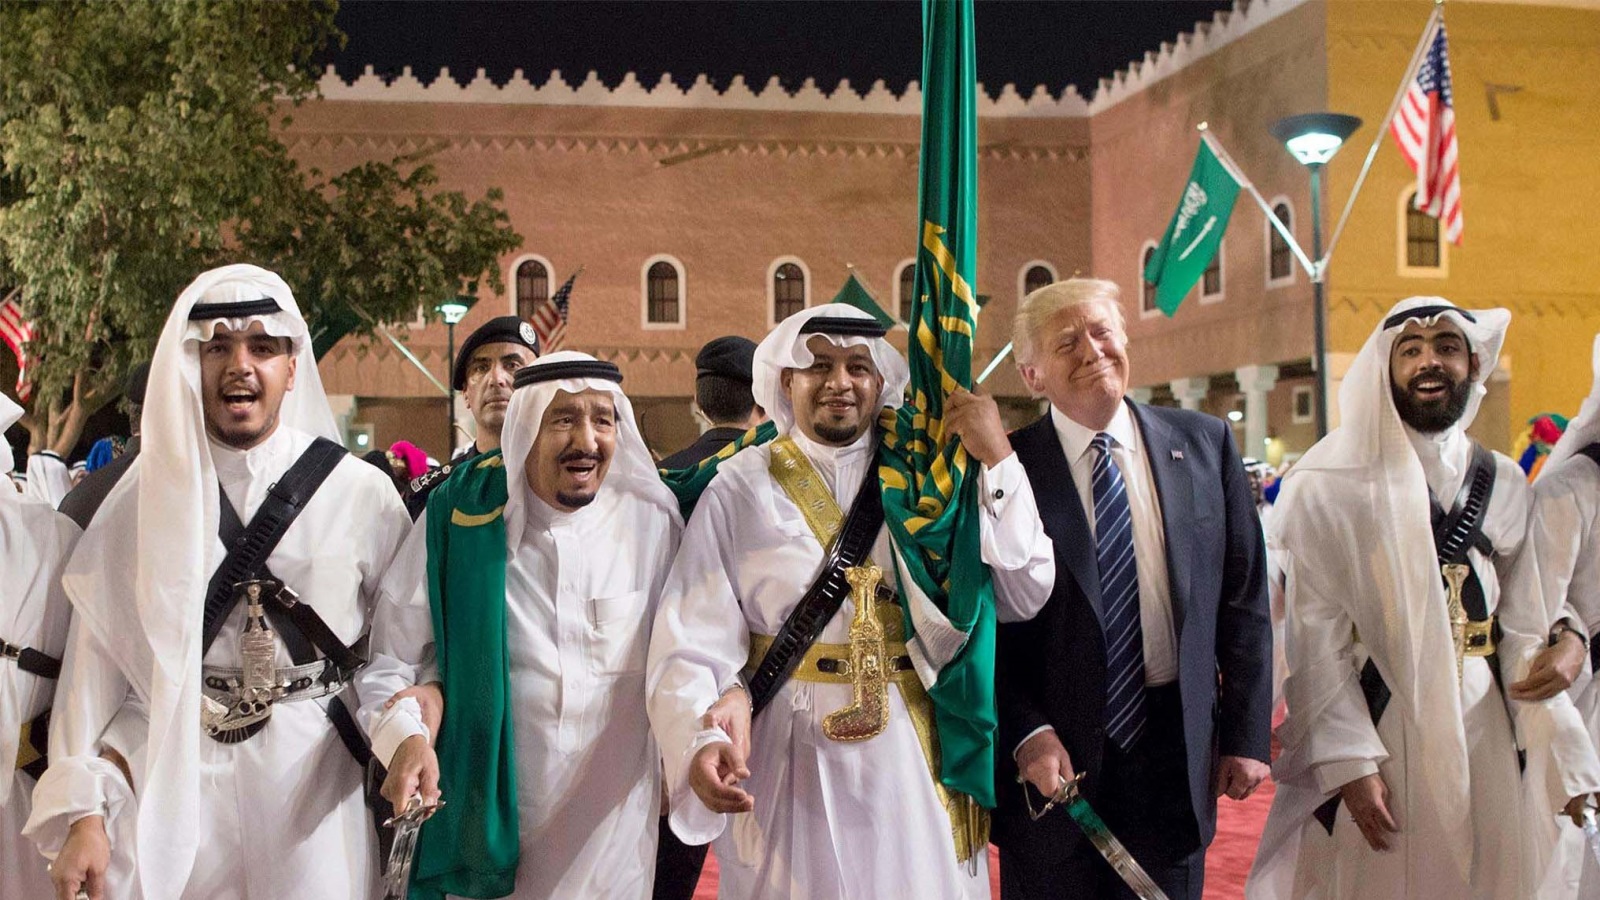 ‪‬ دونالد ترمب يرقص بالسيف في قصر المربع بالرياض وغرّد ضد دولة قطر في البيت الأبيض(الأوروبية